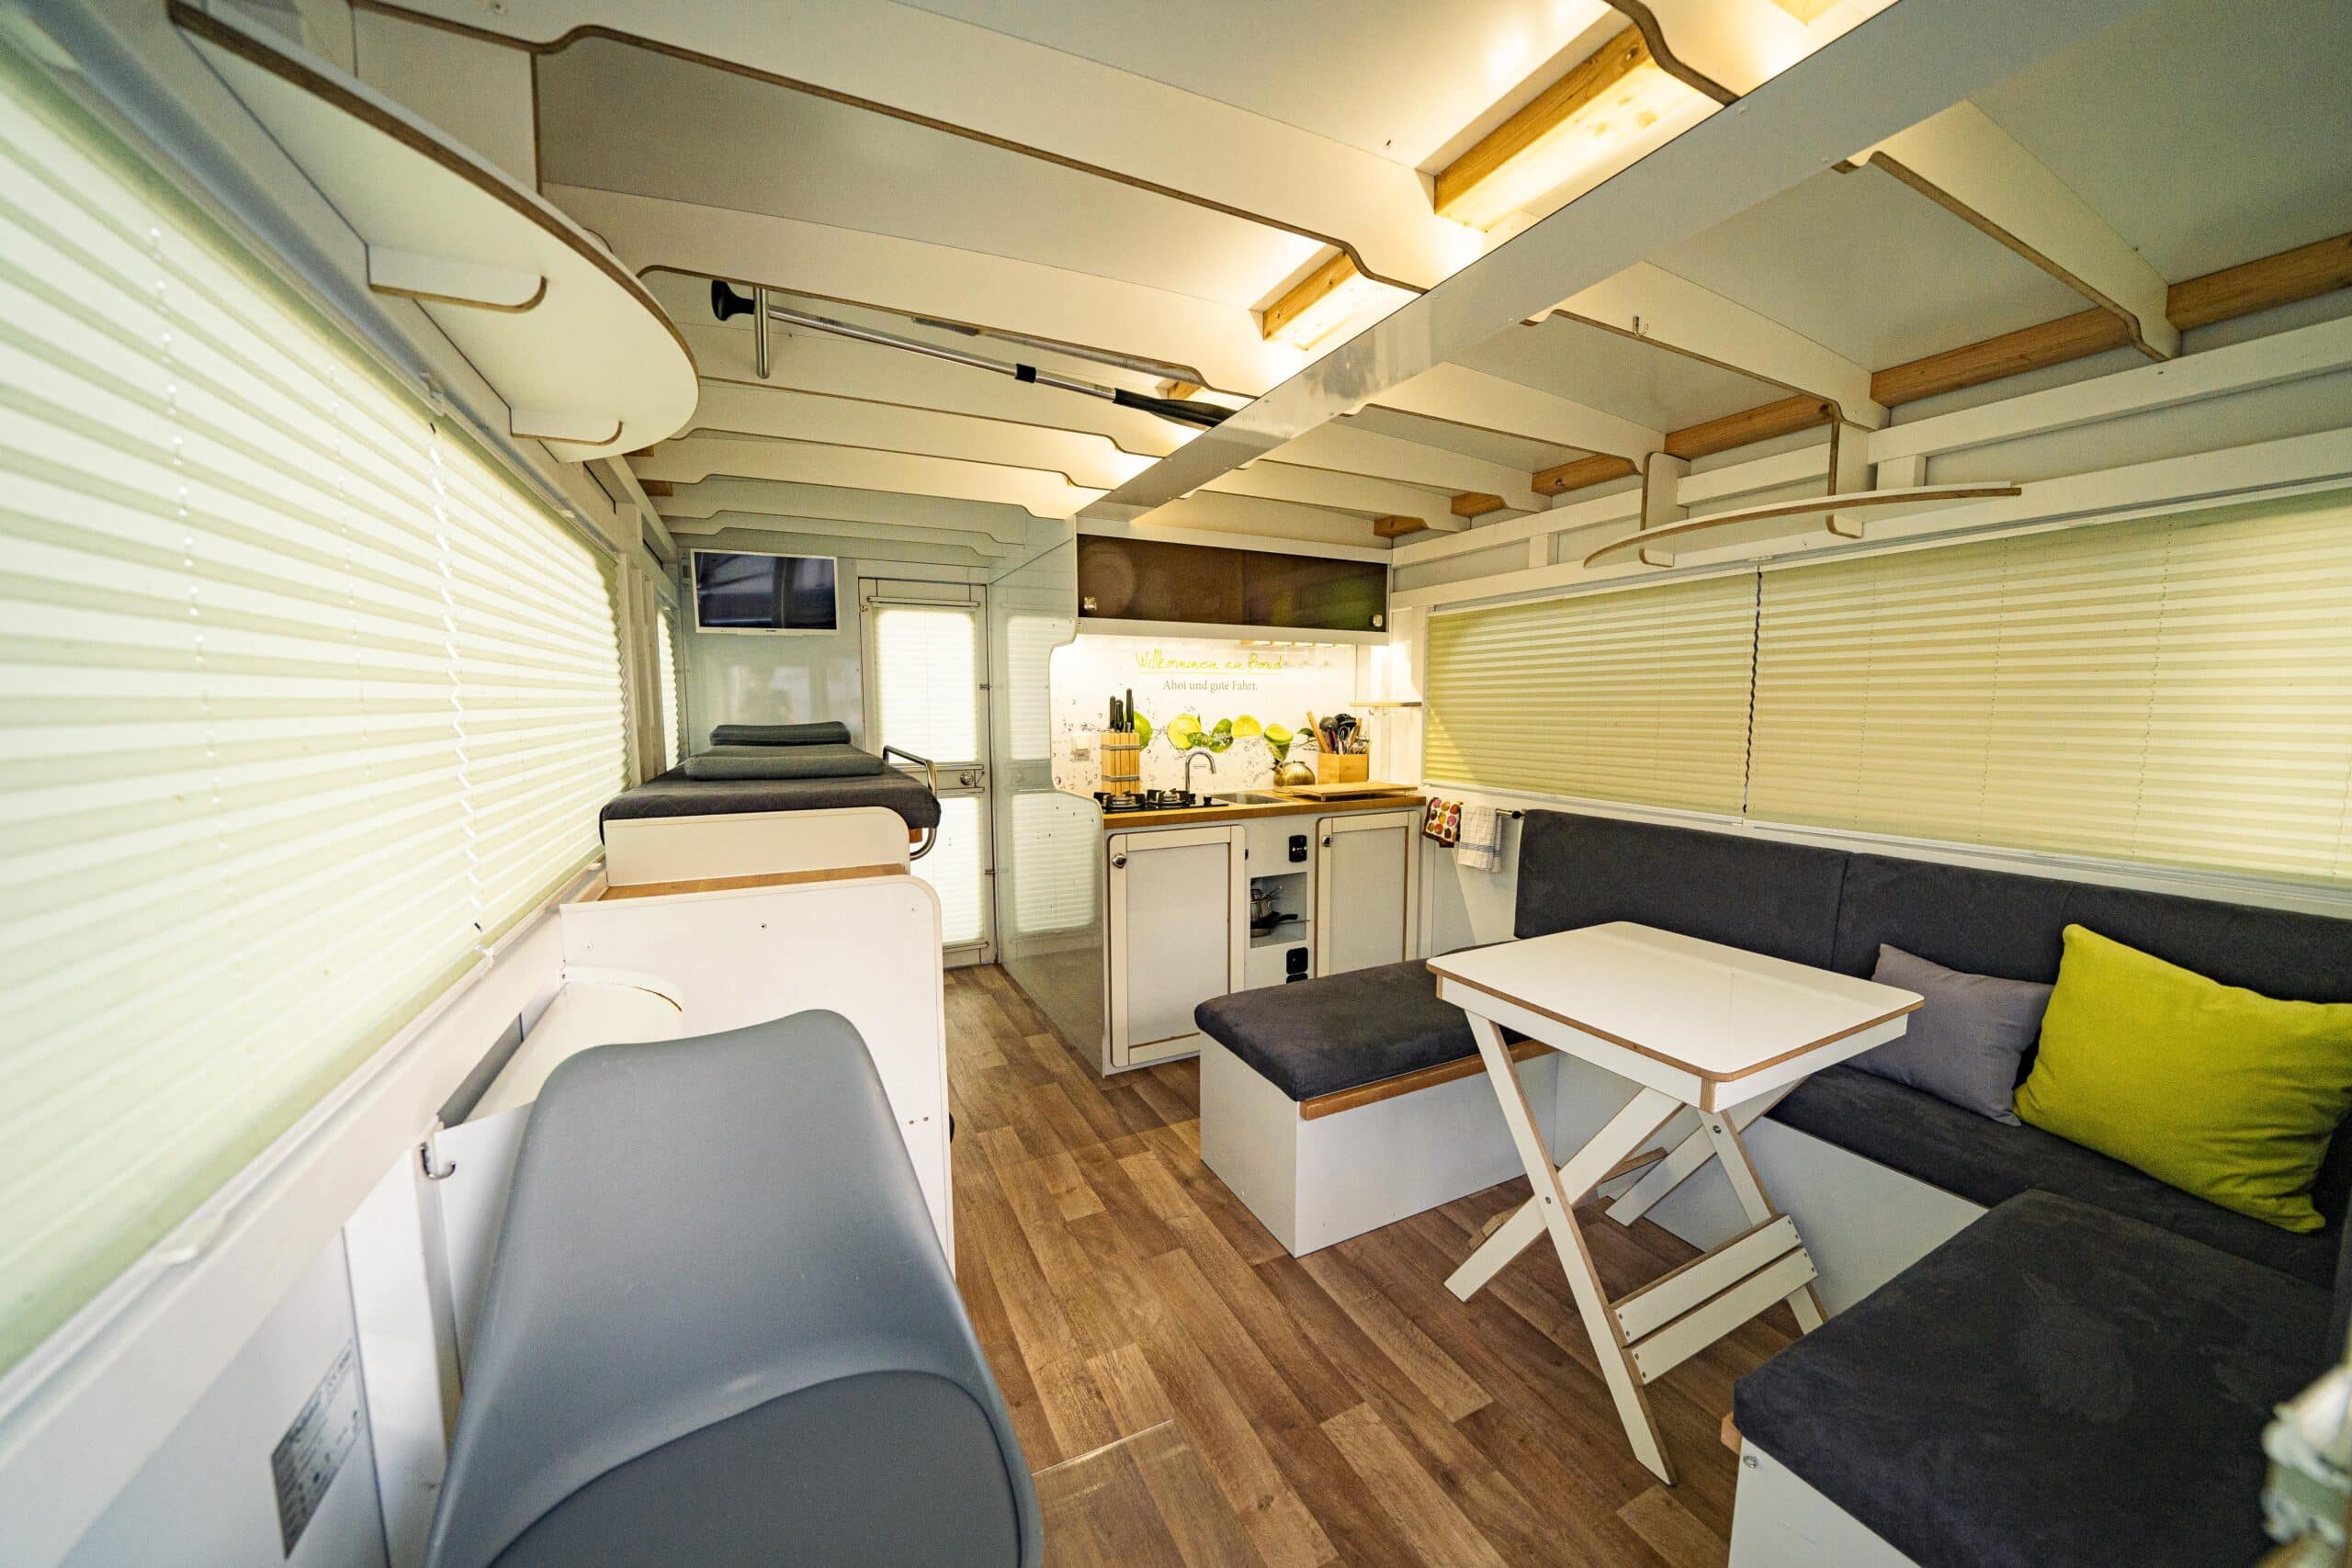 Adonis, COSY Hausboote, Innenraum mit geschlossenen Rolläden ausgestattet mit Sofa, Tisch Küche und Liegen